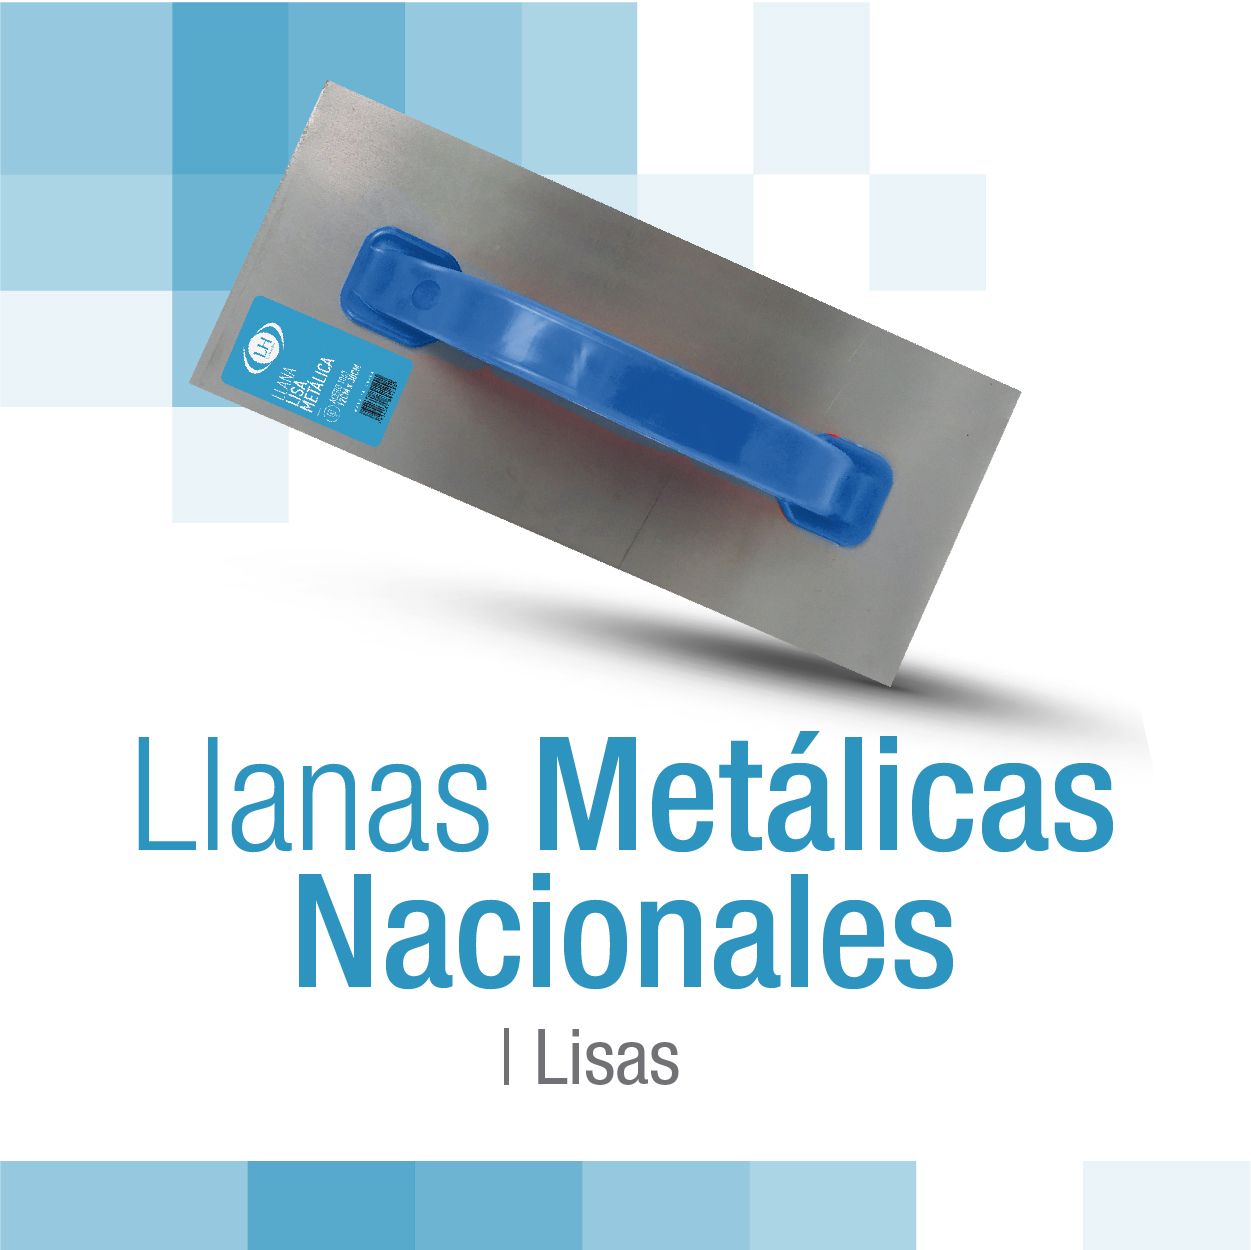 encabezado_llanas_metalicas_nacionales_lisas